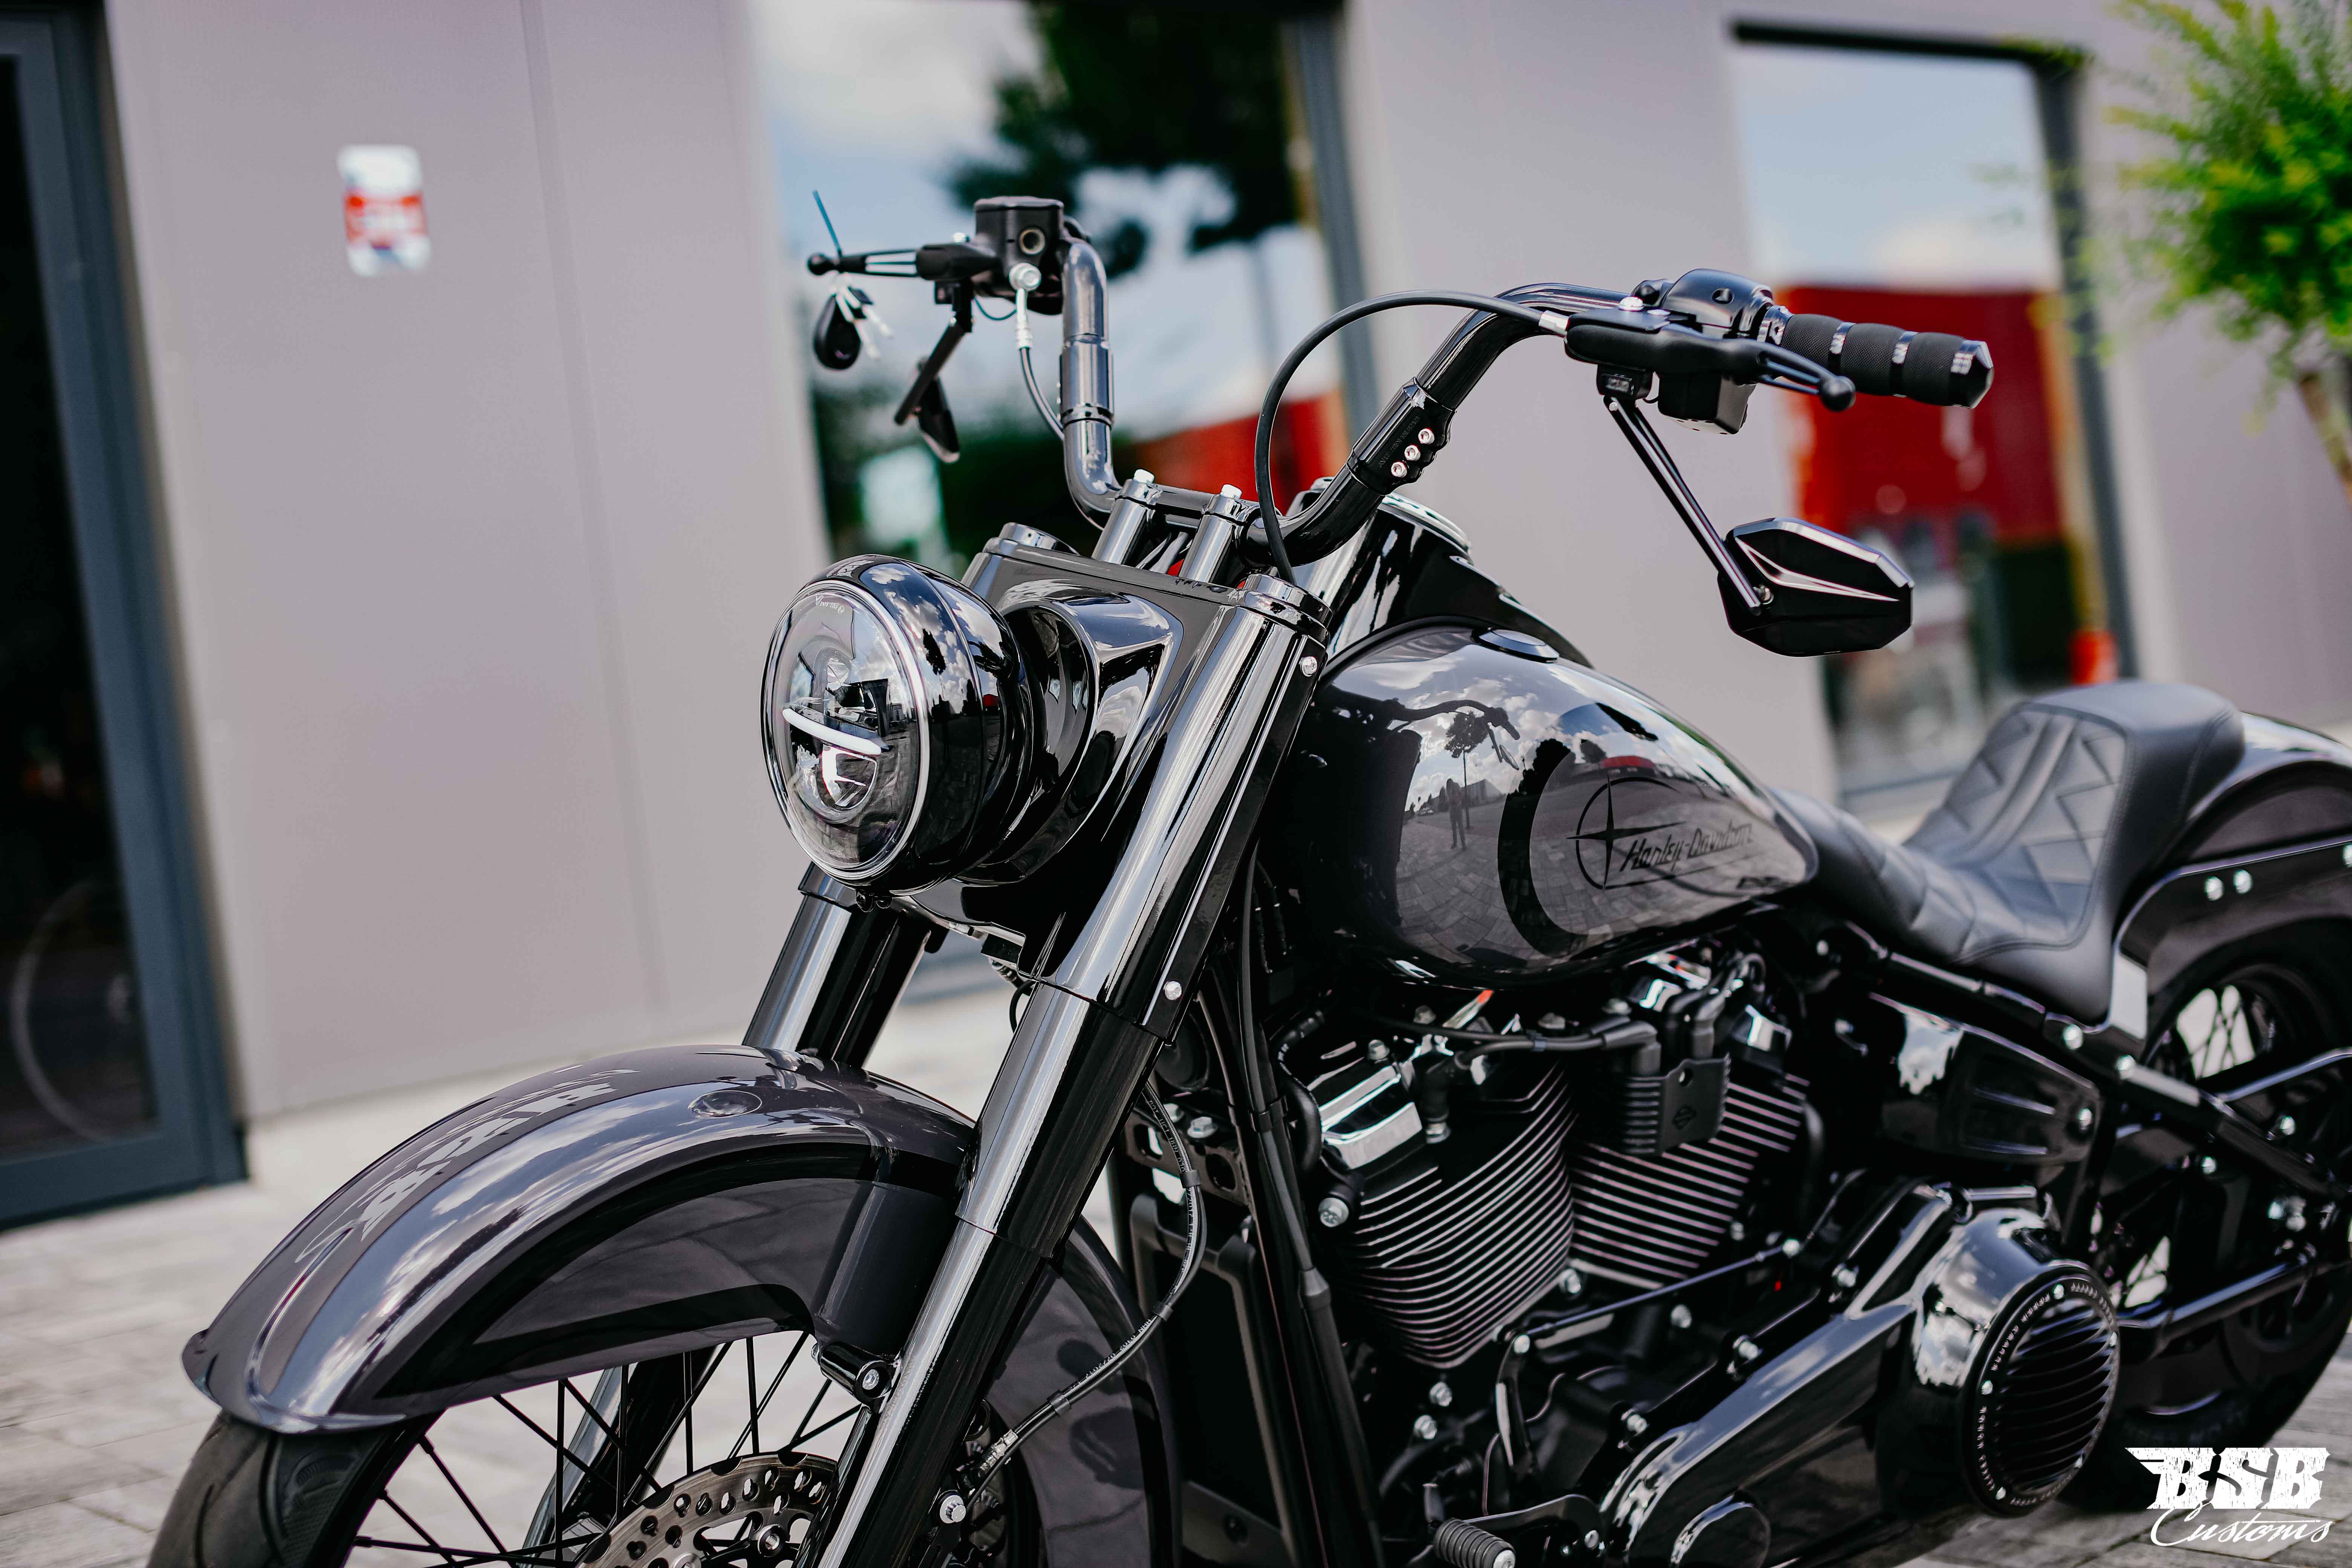 2018 Harley Davidson Heritage 107 CUI Chicano Umbau mit Jekill & Hyde Anlage (ab 300 EUR finanzieren*)